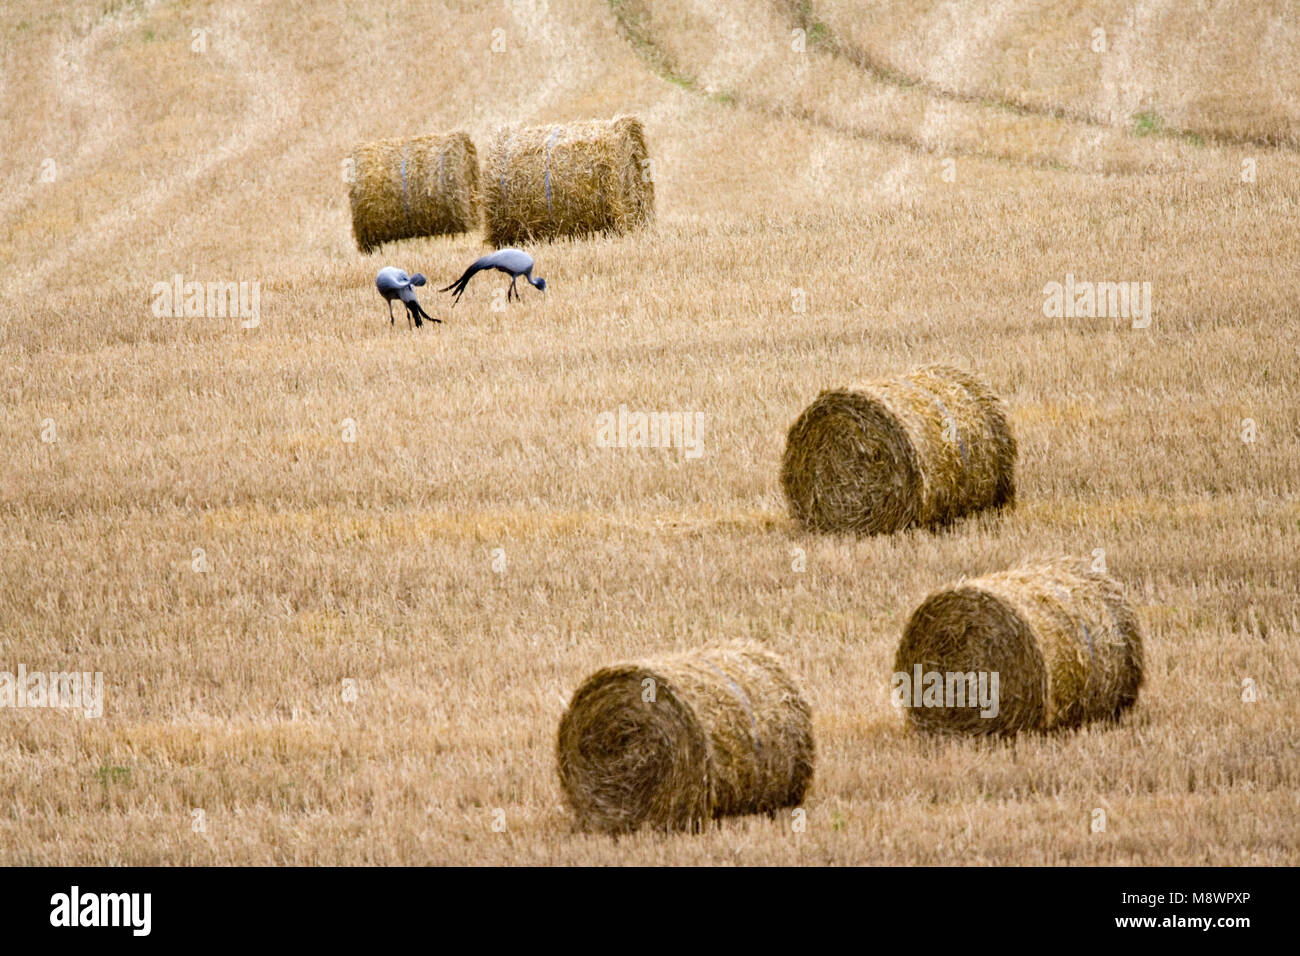 Stanley-kraanvogels foeragerend in graanveld; Blue Cranes foraging in field Stock Photo